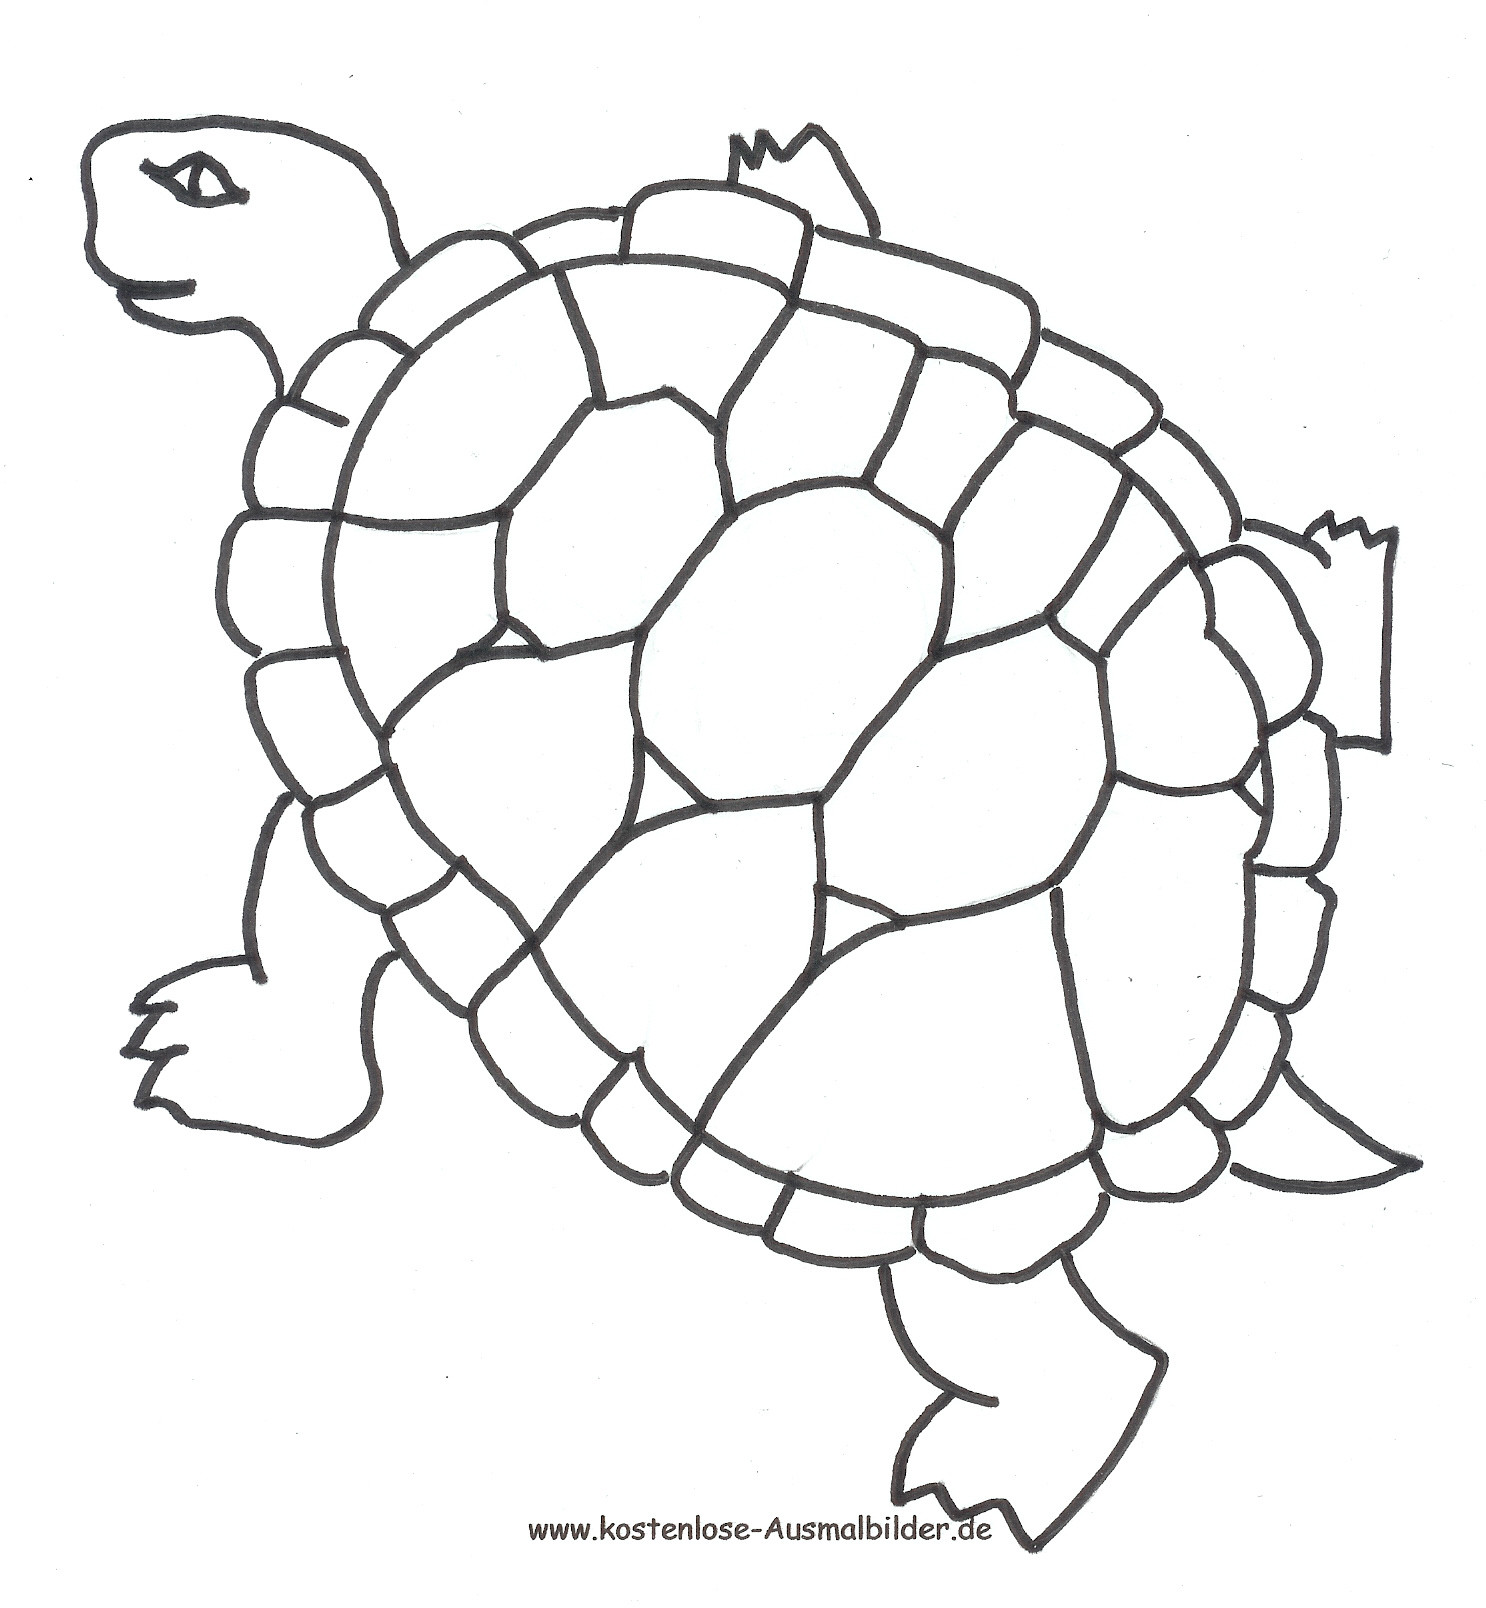 Schildkröte Ausmalbilder
 Ausmalbilder Schildkröte Tiere zum ausmalen